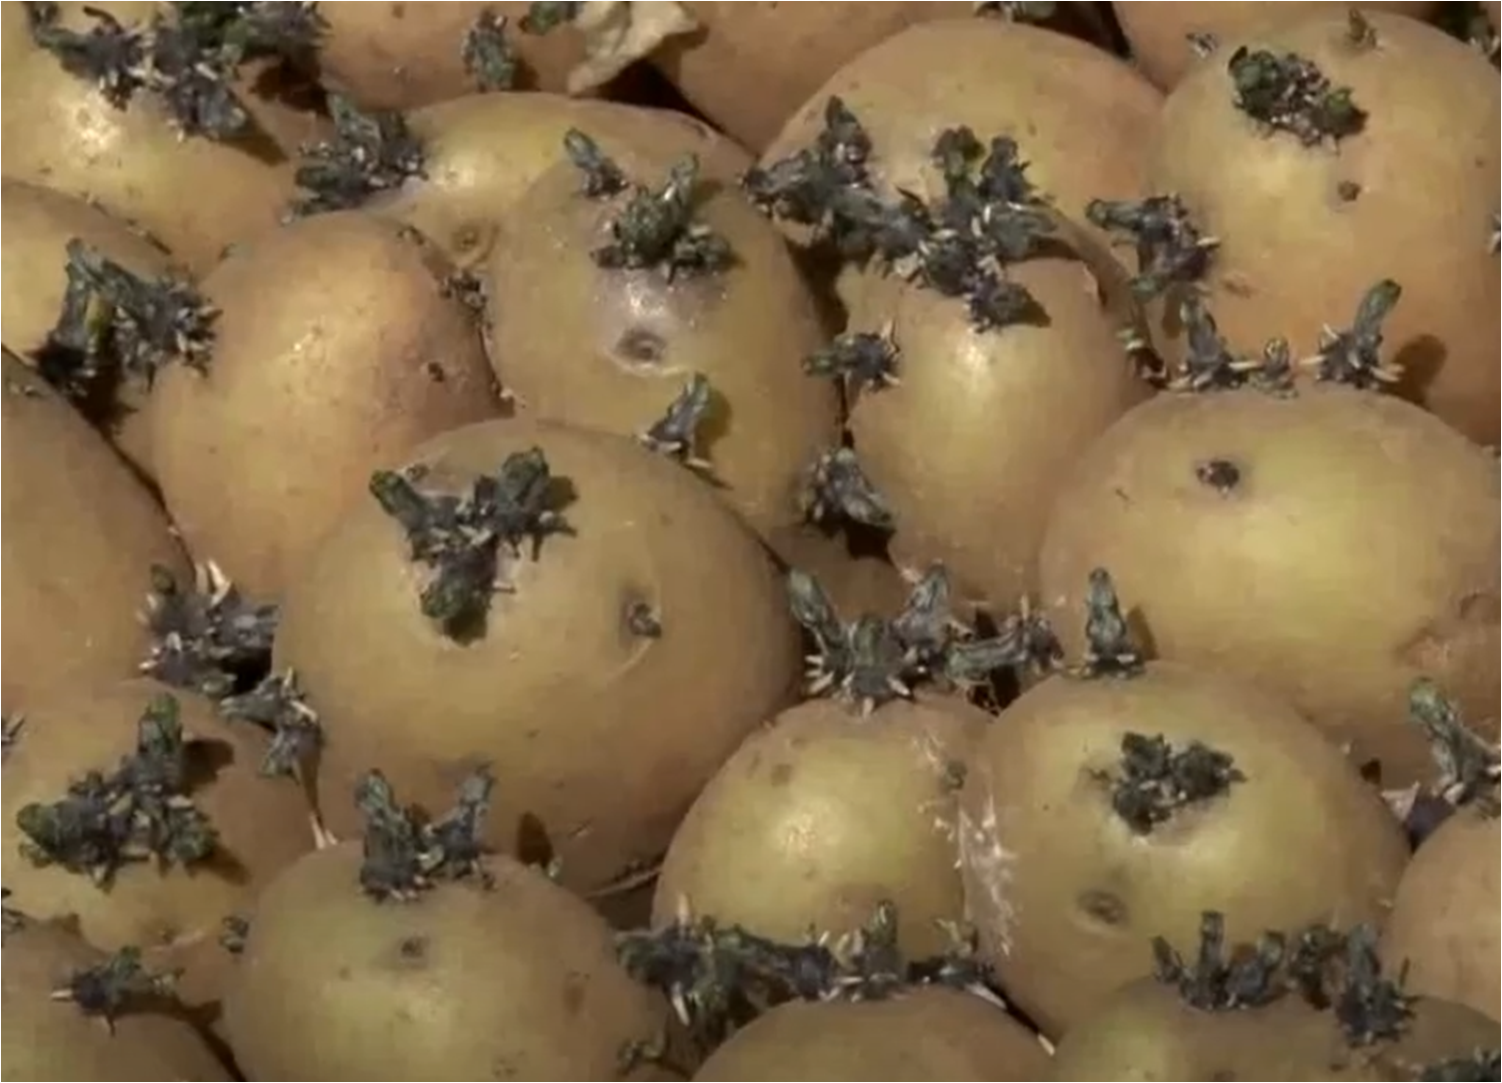 اهمية استعمال بذور البطاطا المنتجة محليا